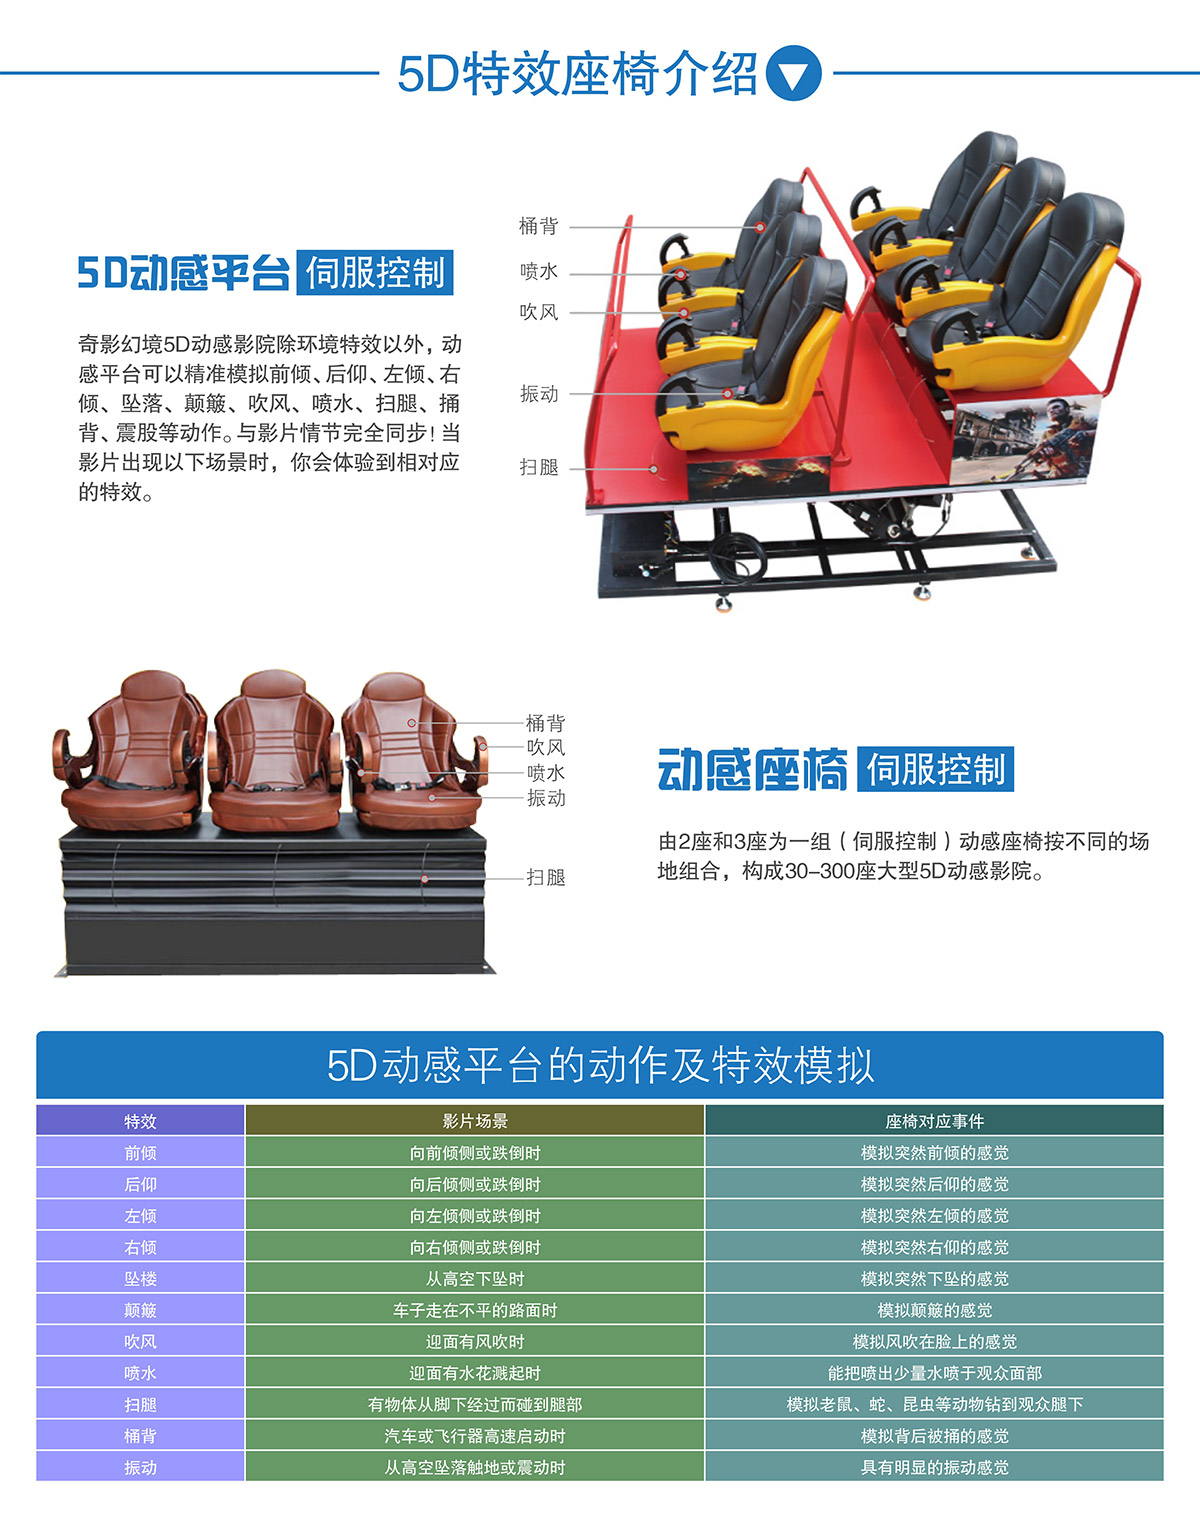 巨幕影院中大型5D动感特效座椅介绍.jpg